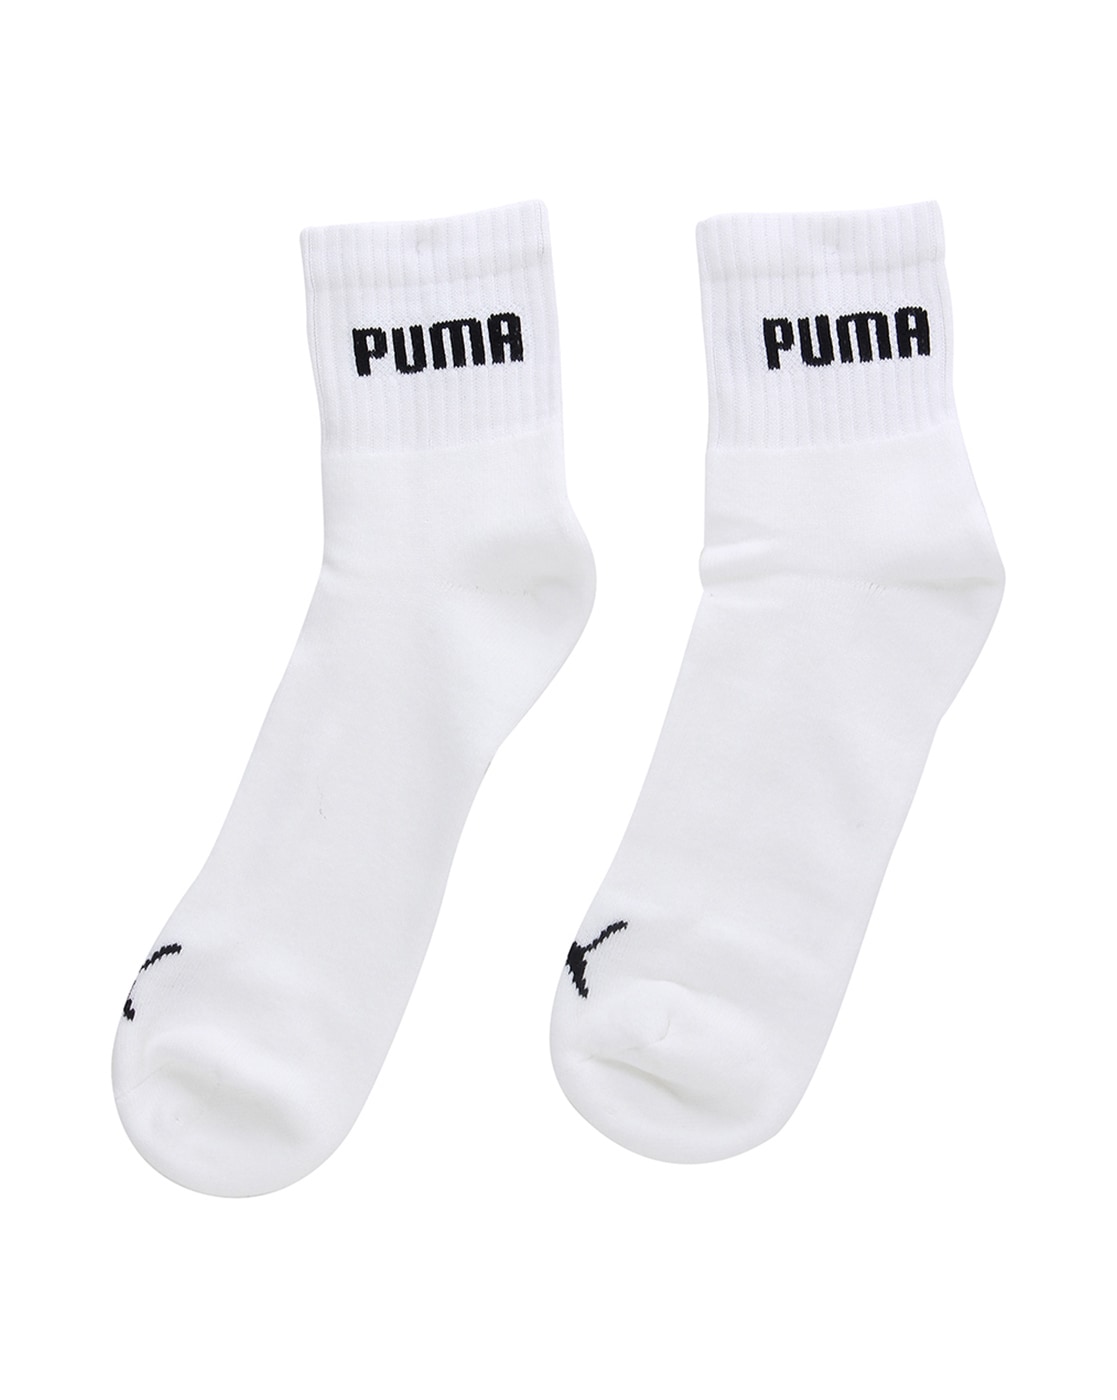 where can i buy puma socks